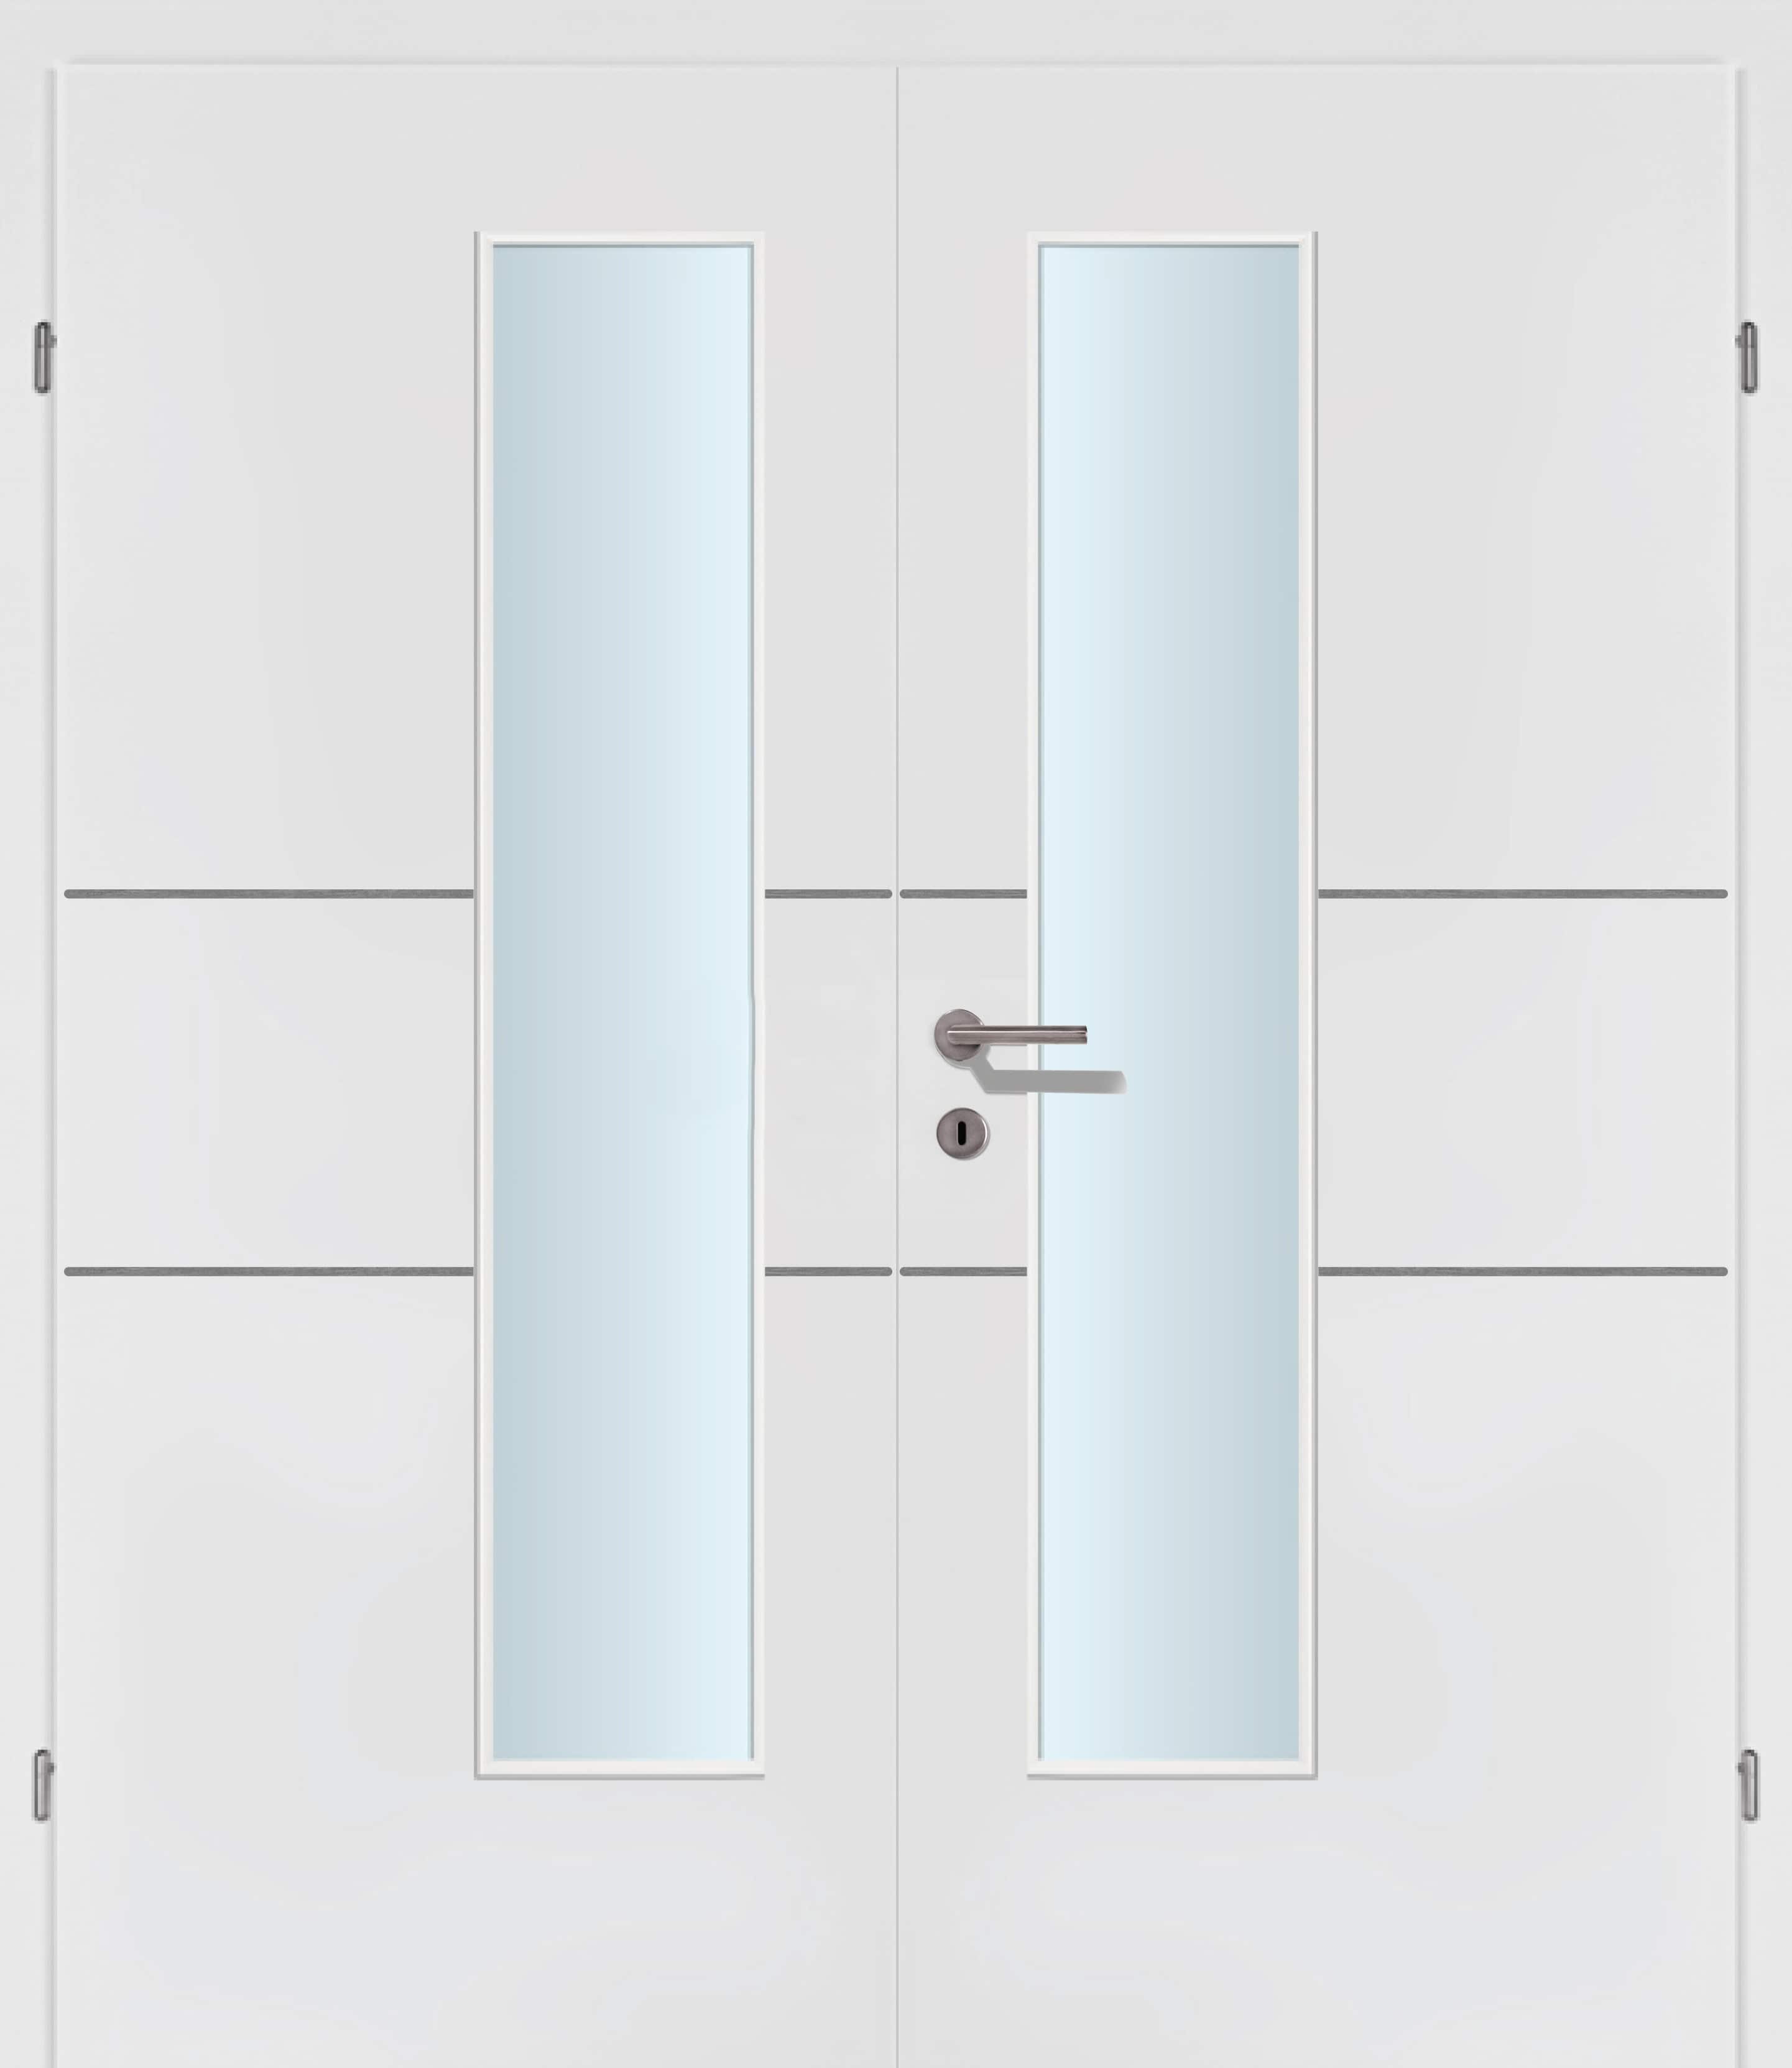 Selektion T41 Alu Effekt Lisenen weiss Innentür Inkl. Zarge (Türrahmen) Doppeltüre Inkl. Glaslichte EN Drückerseitig